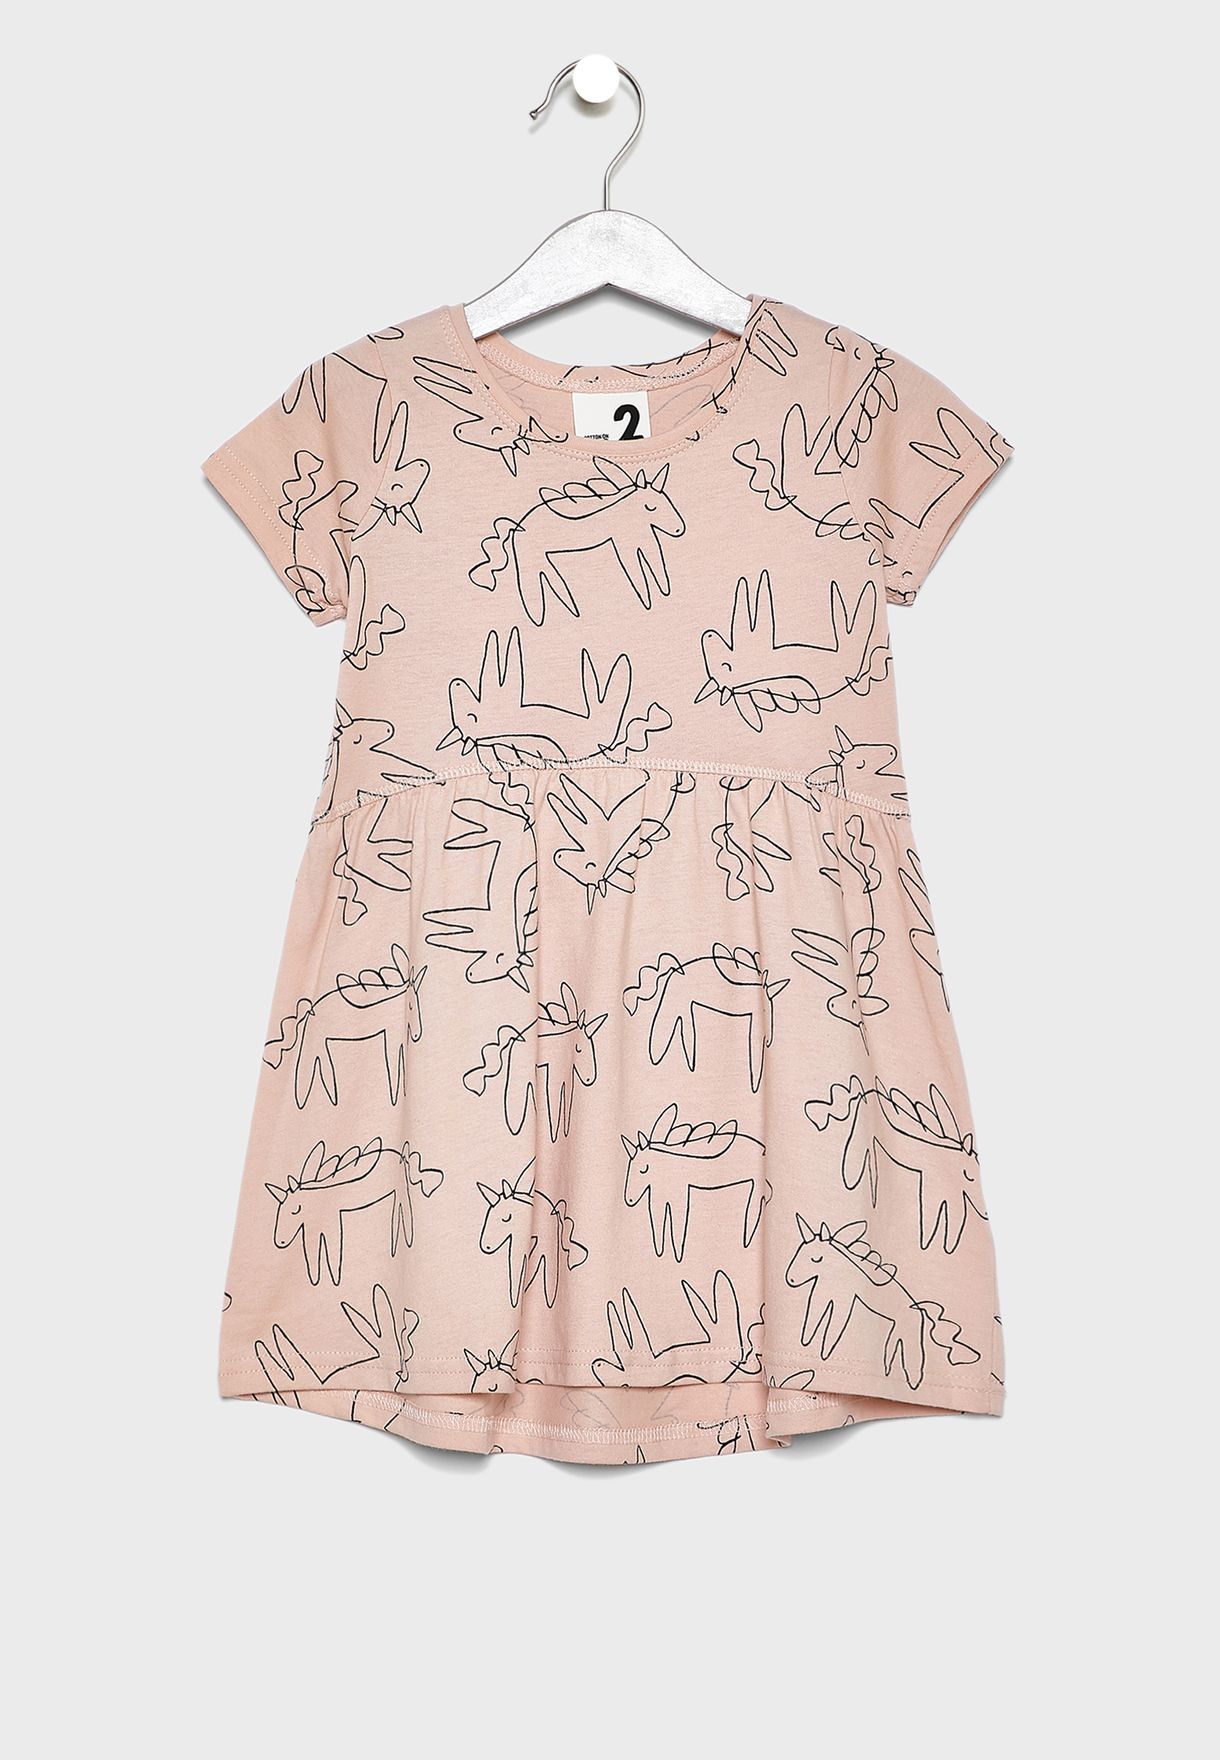 cotton on kids unicorn dress